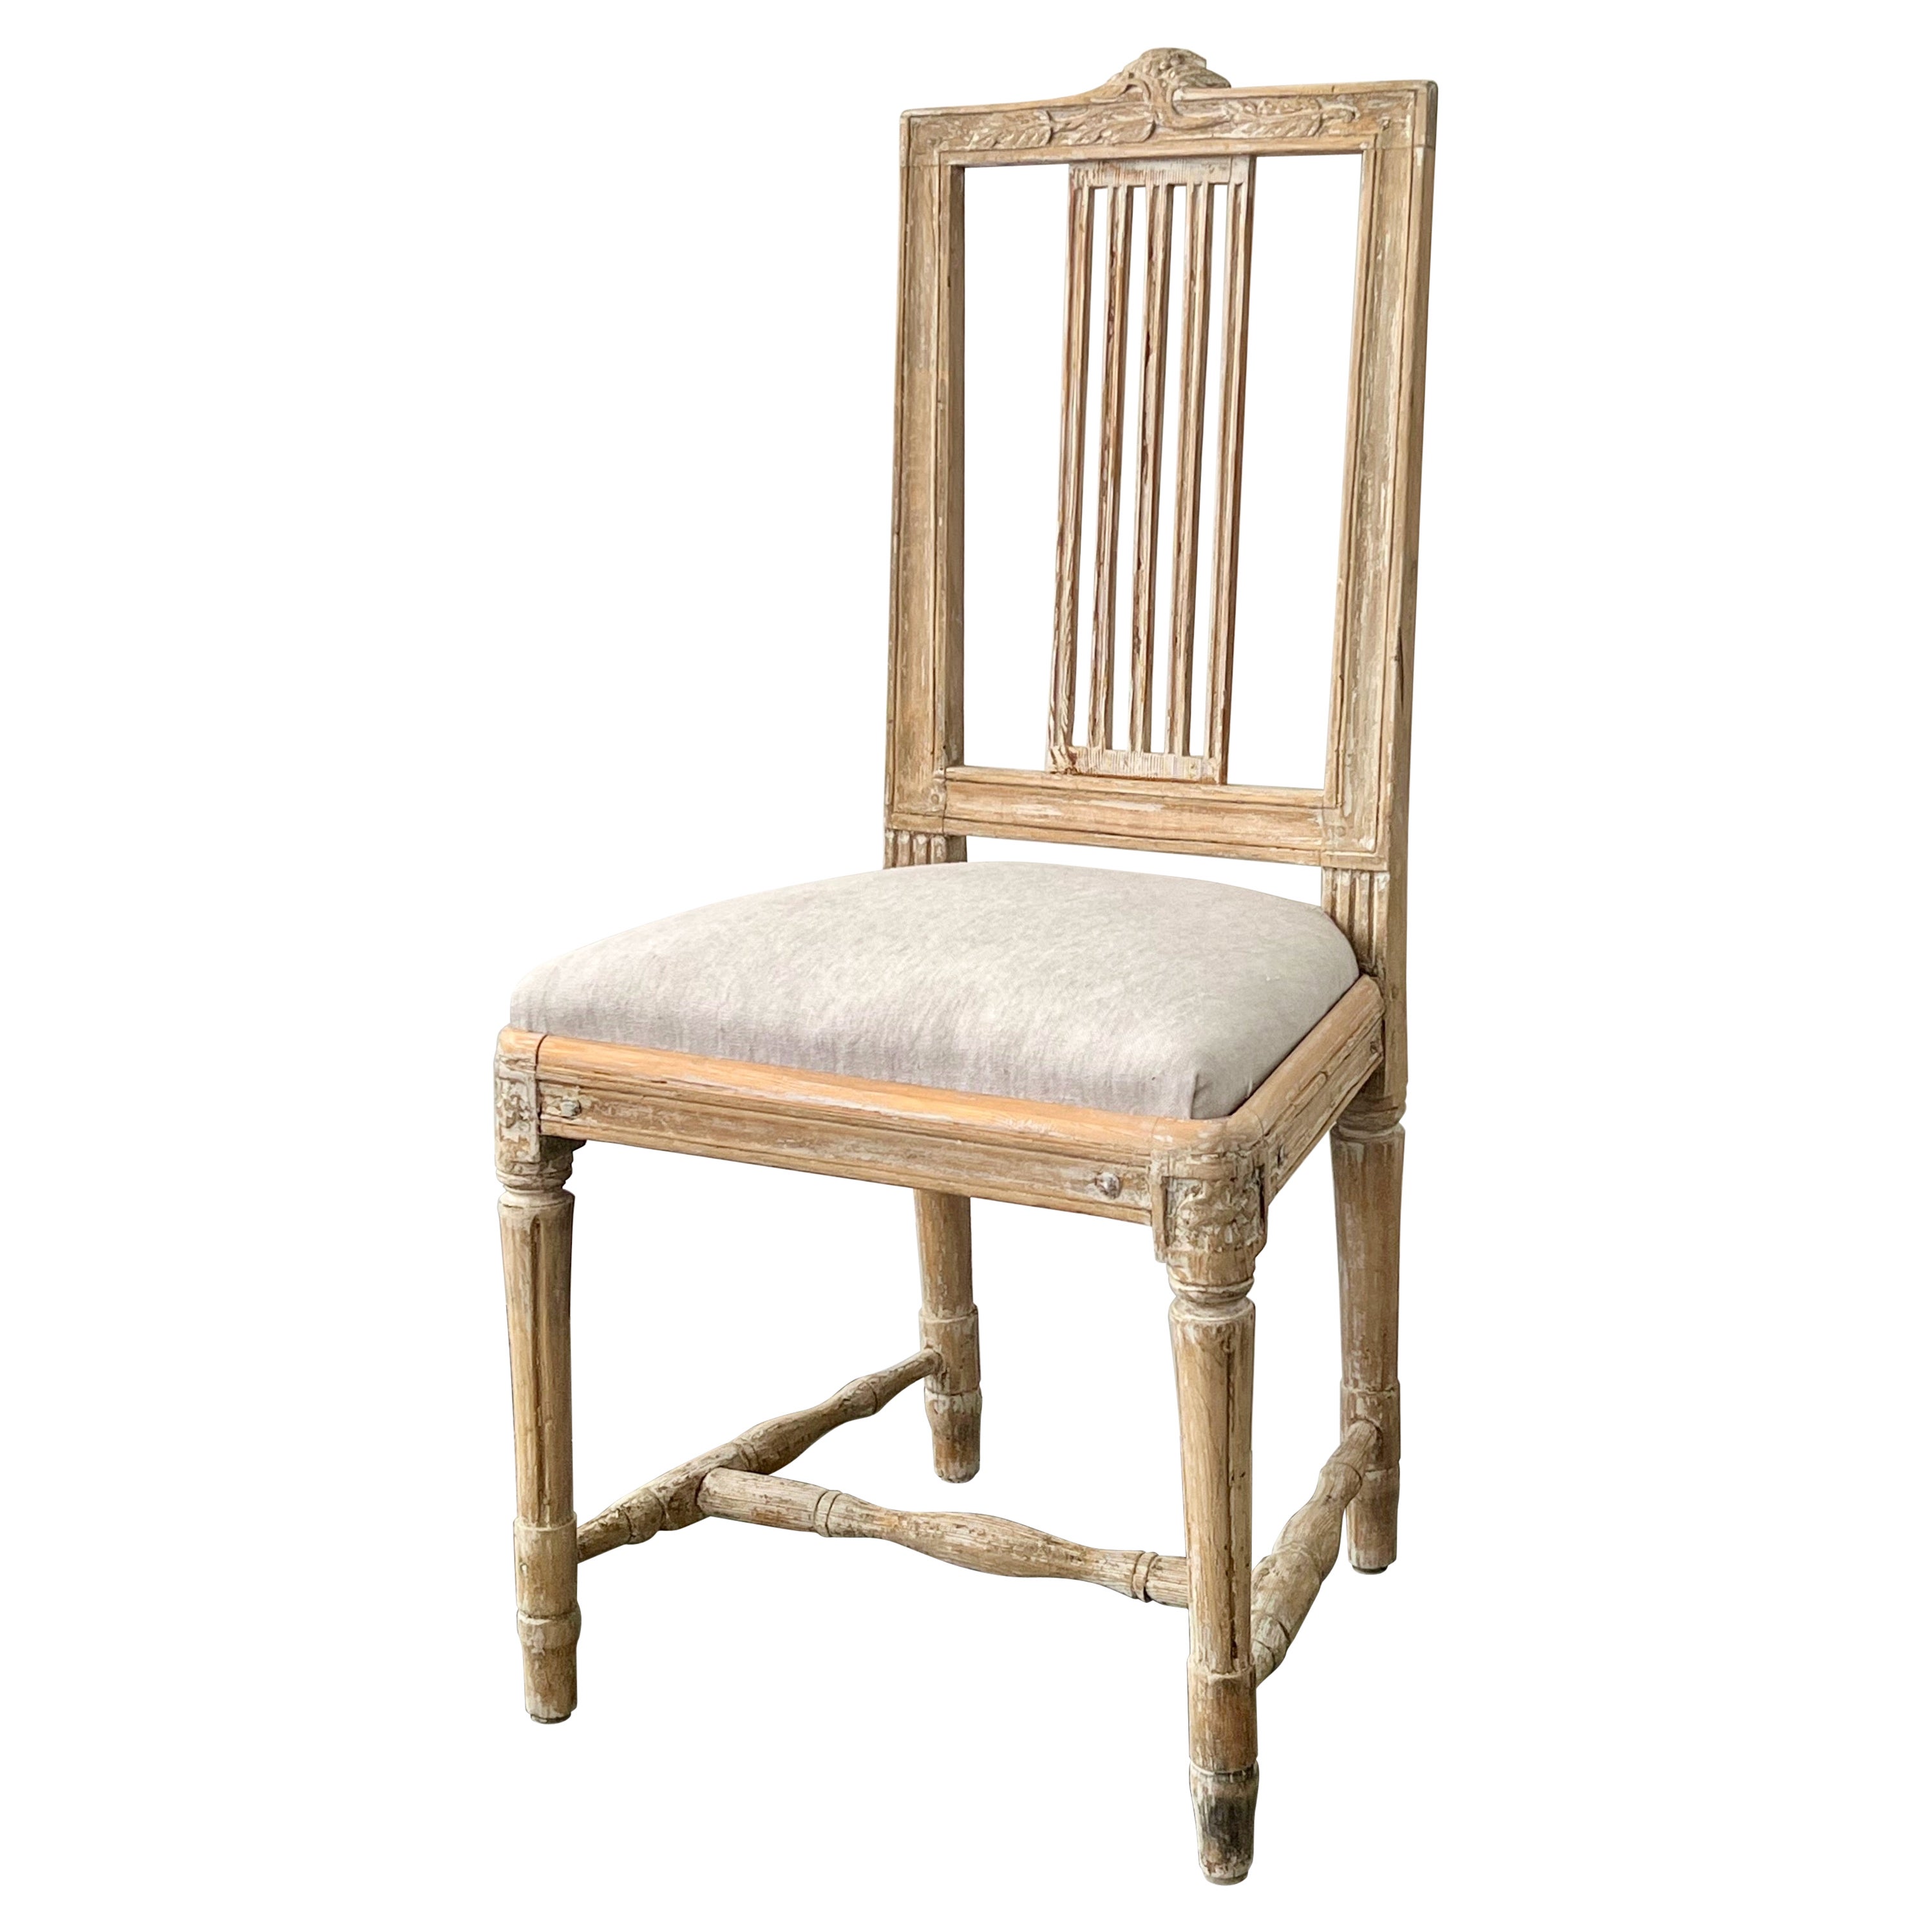 Schwedischer Lindome-Beistellstuhl aus der Gustavianischen Periode, 18. Jahrhundert